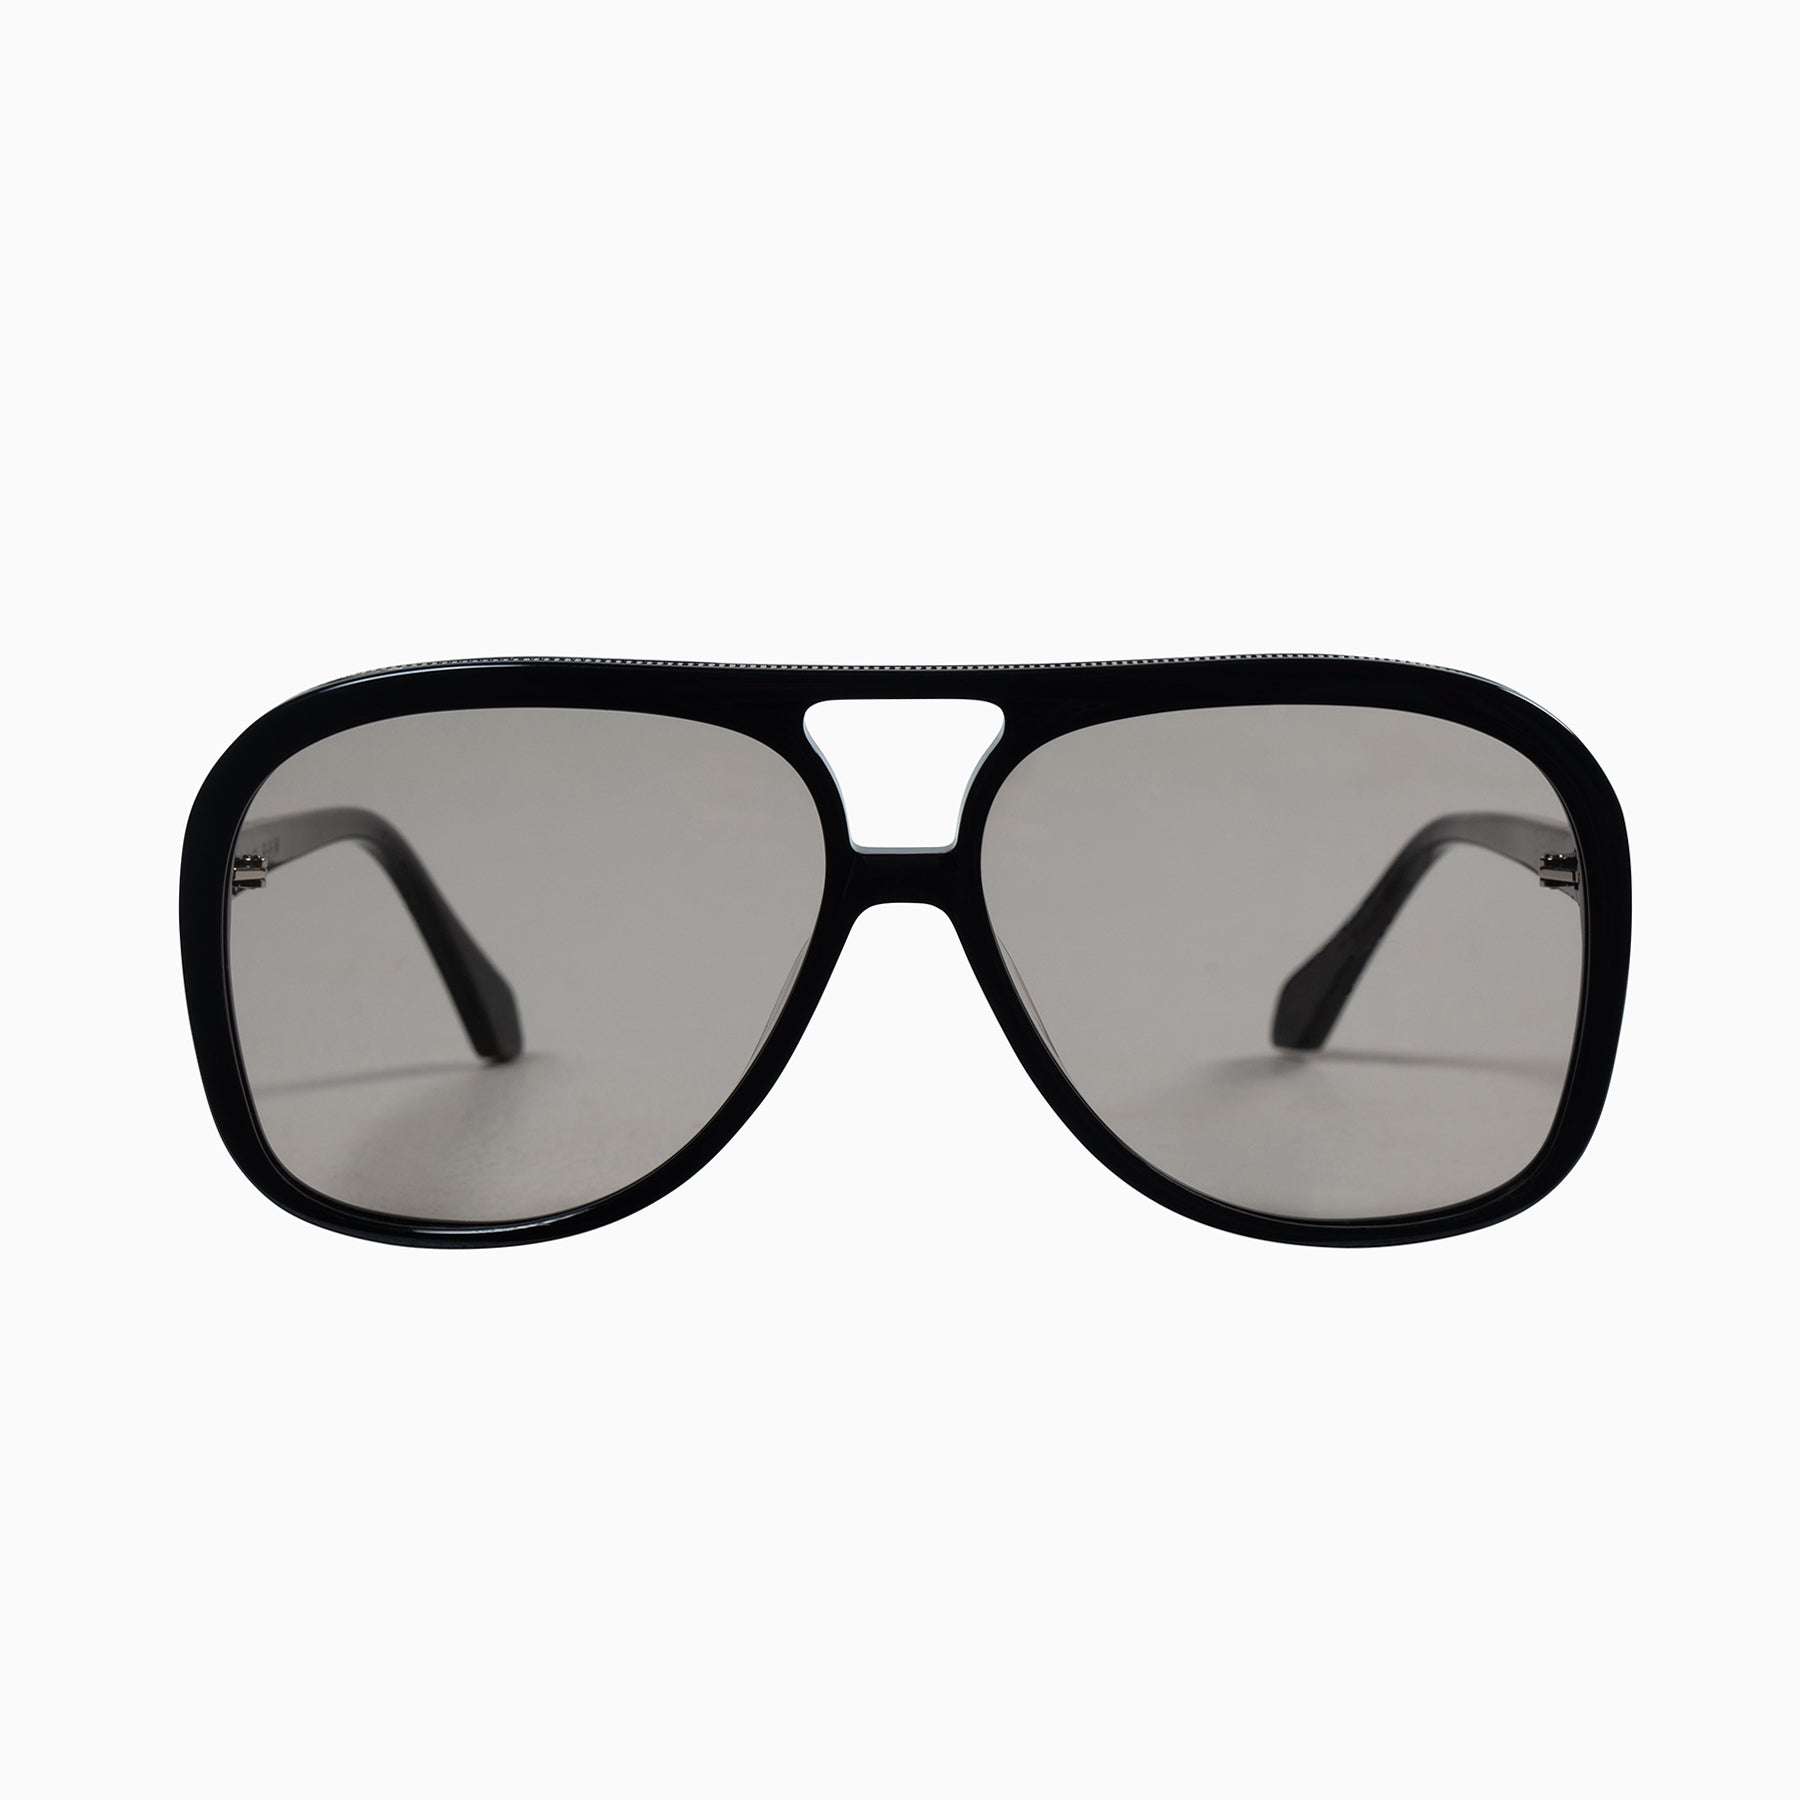 Valley Bang Sunglasses | Oversized Aviator Sunglasses For Men & Women ...